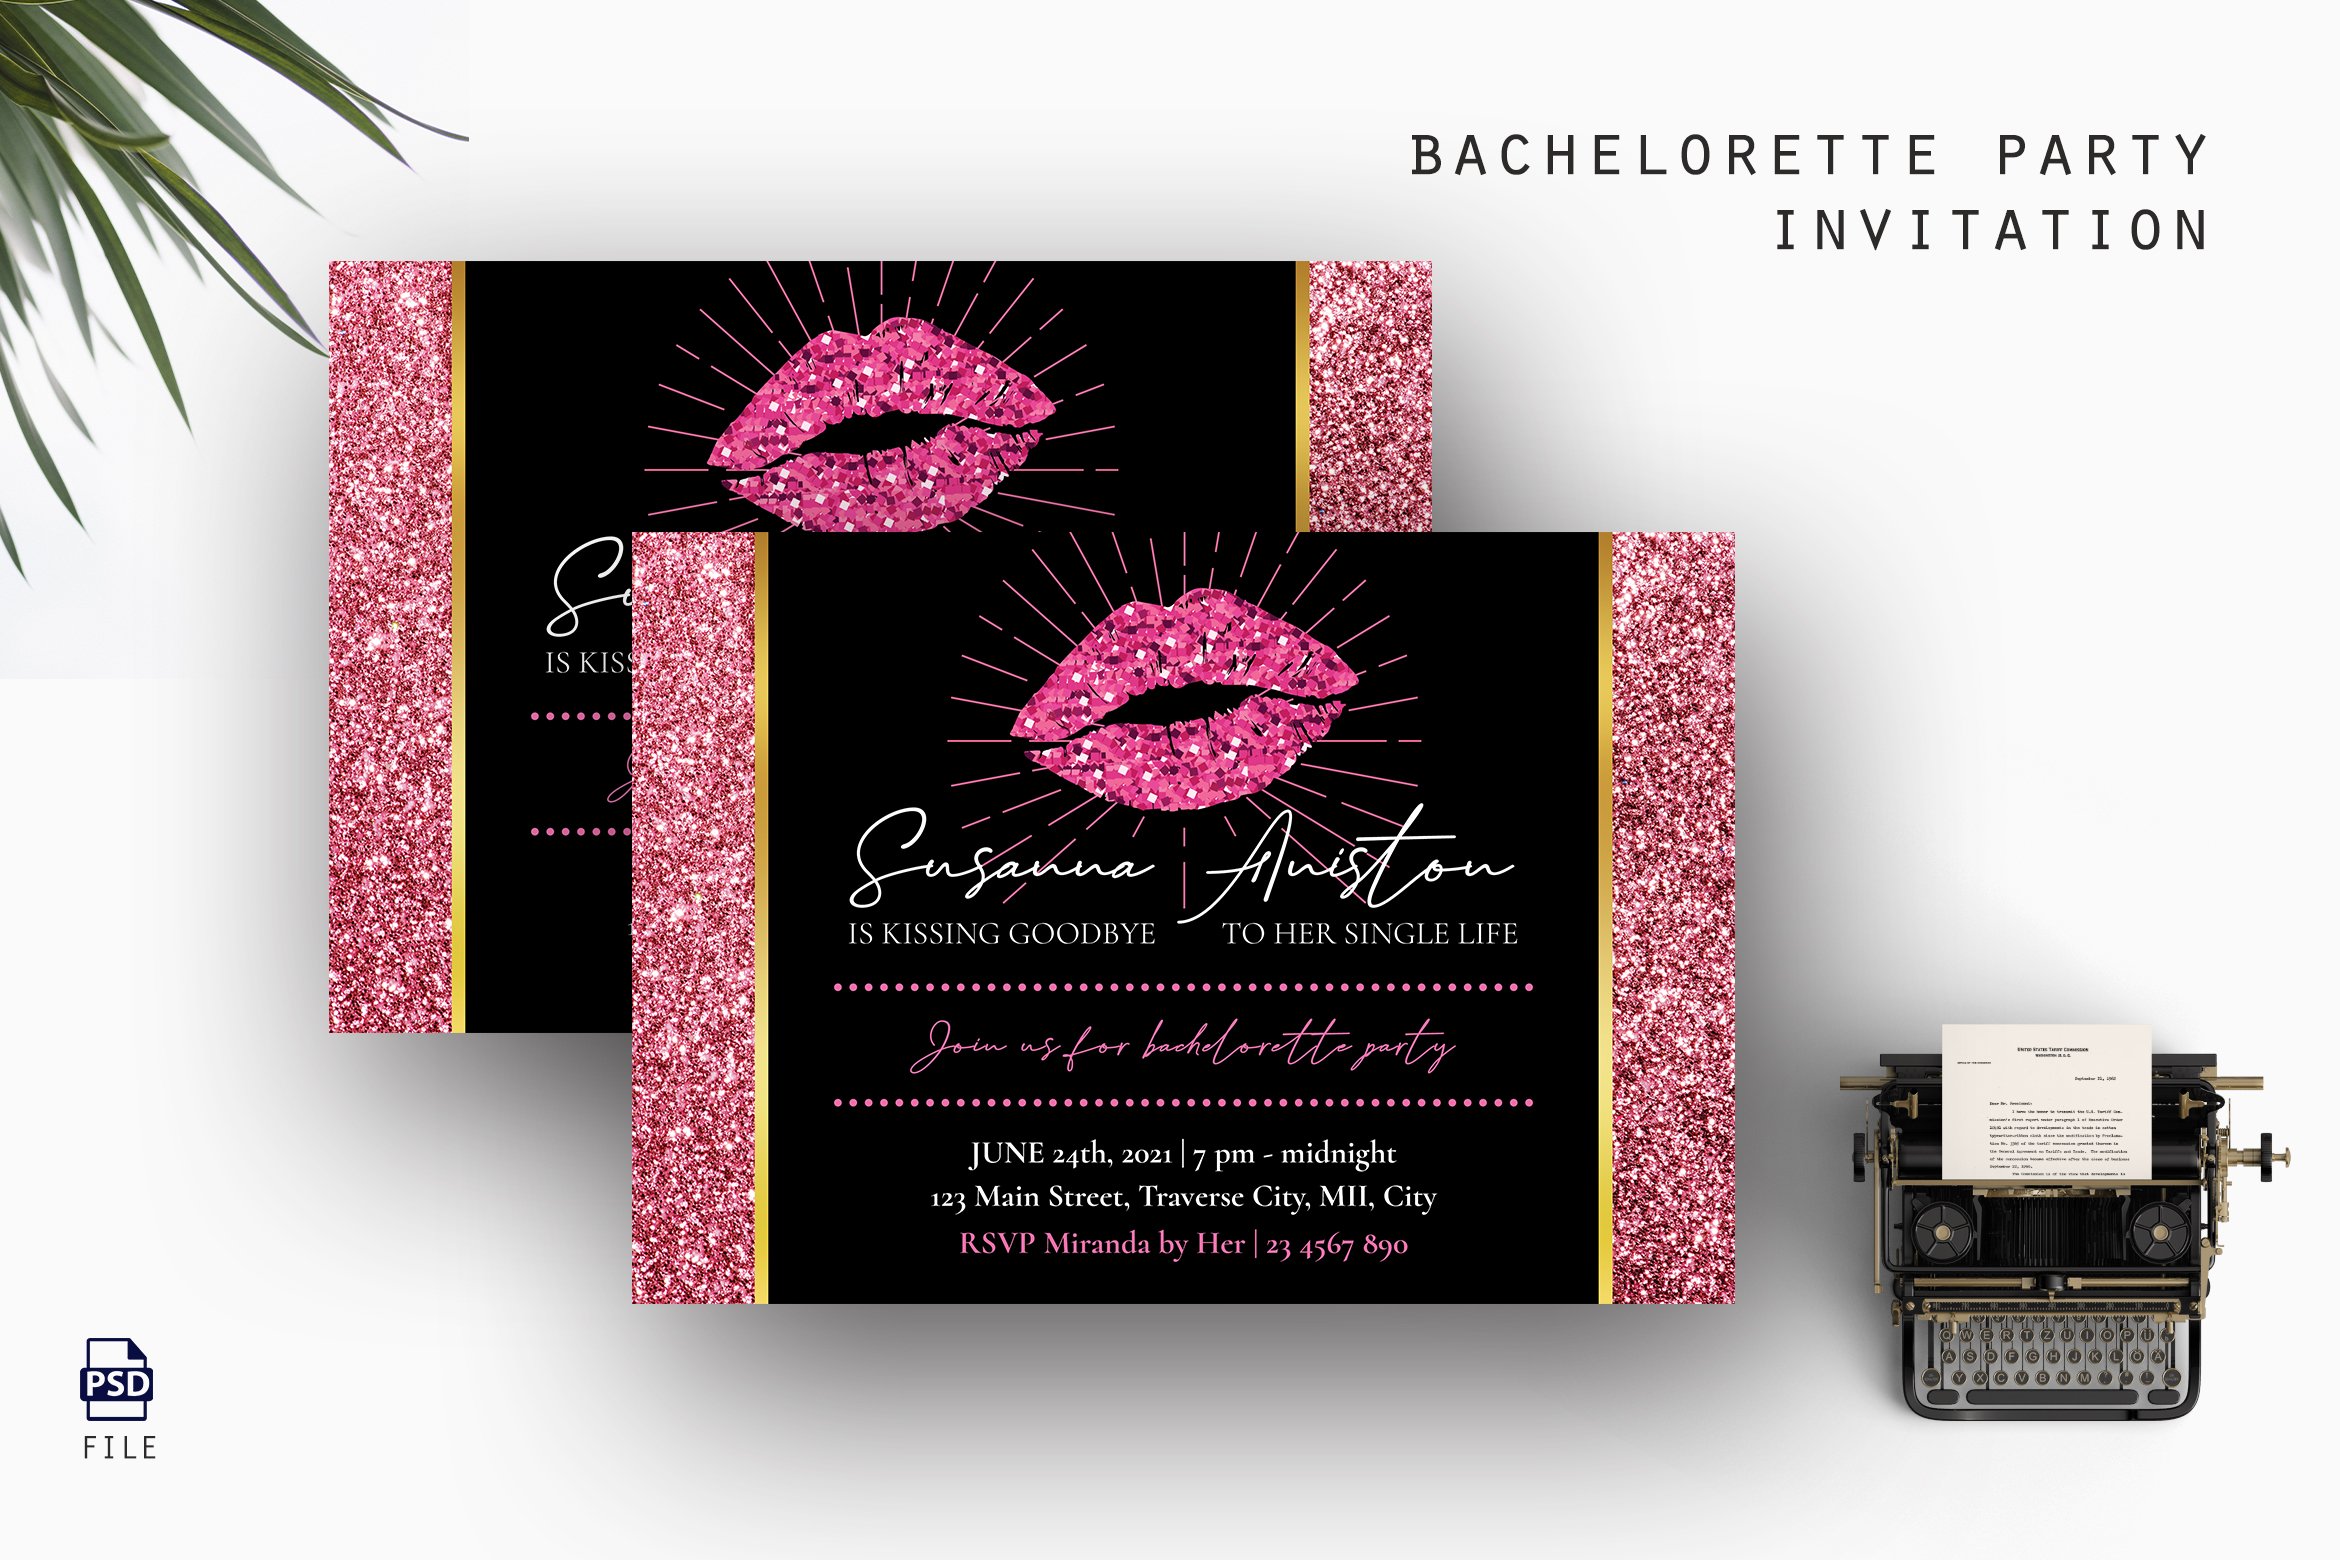 Bachelorette Party Invitation cover image.